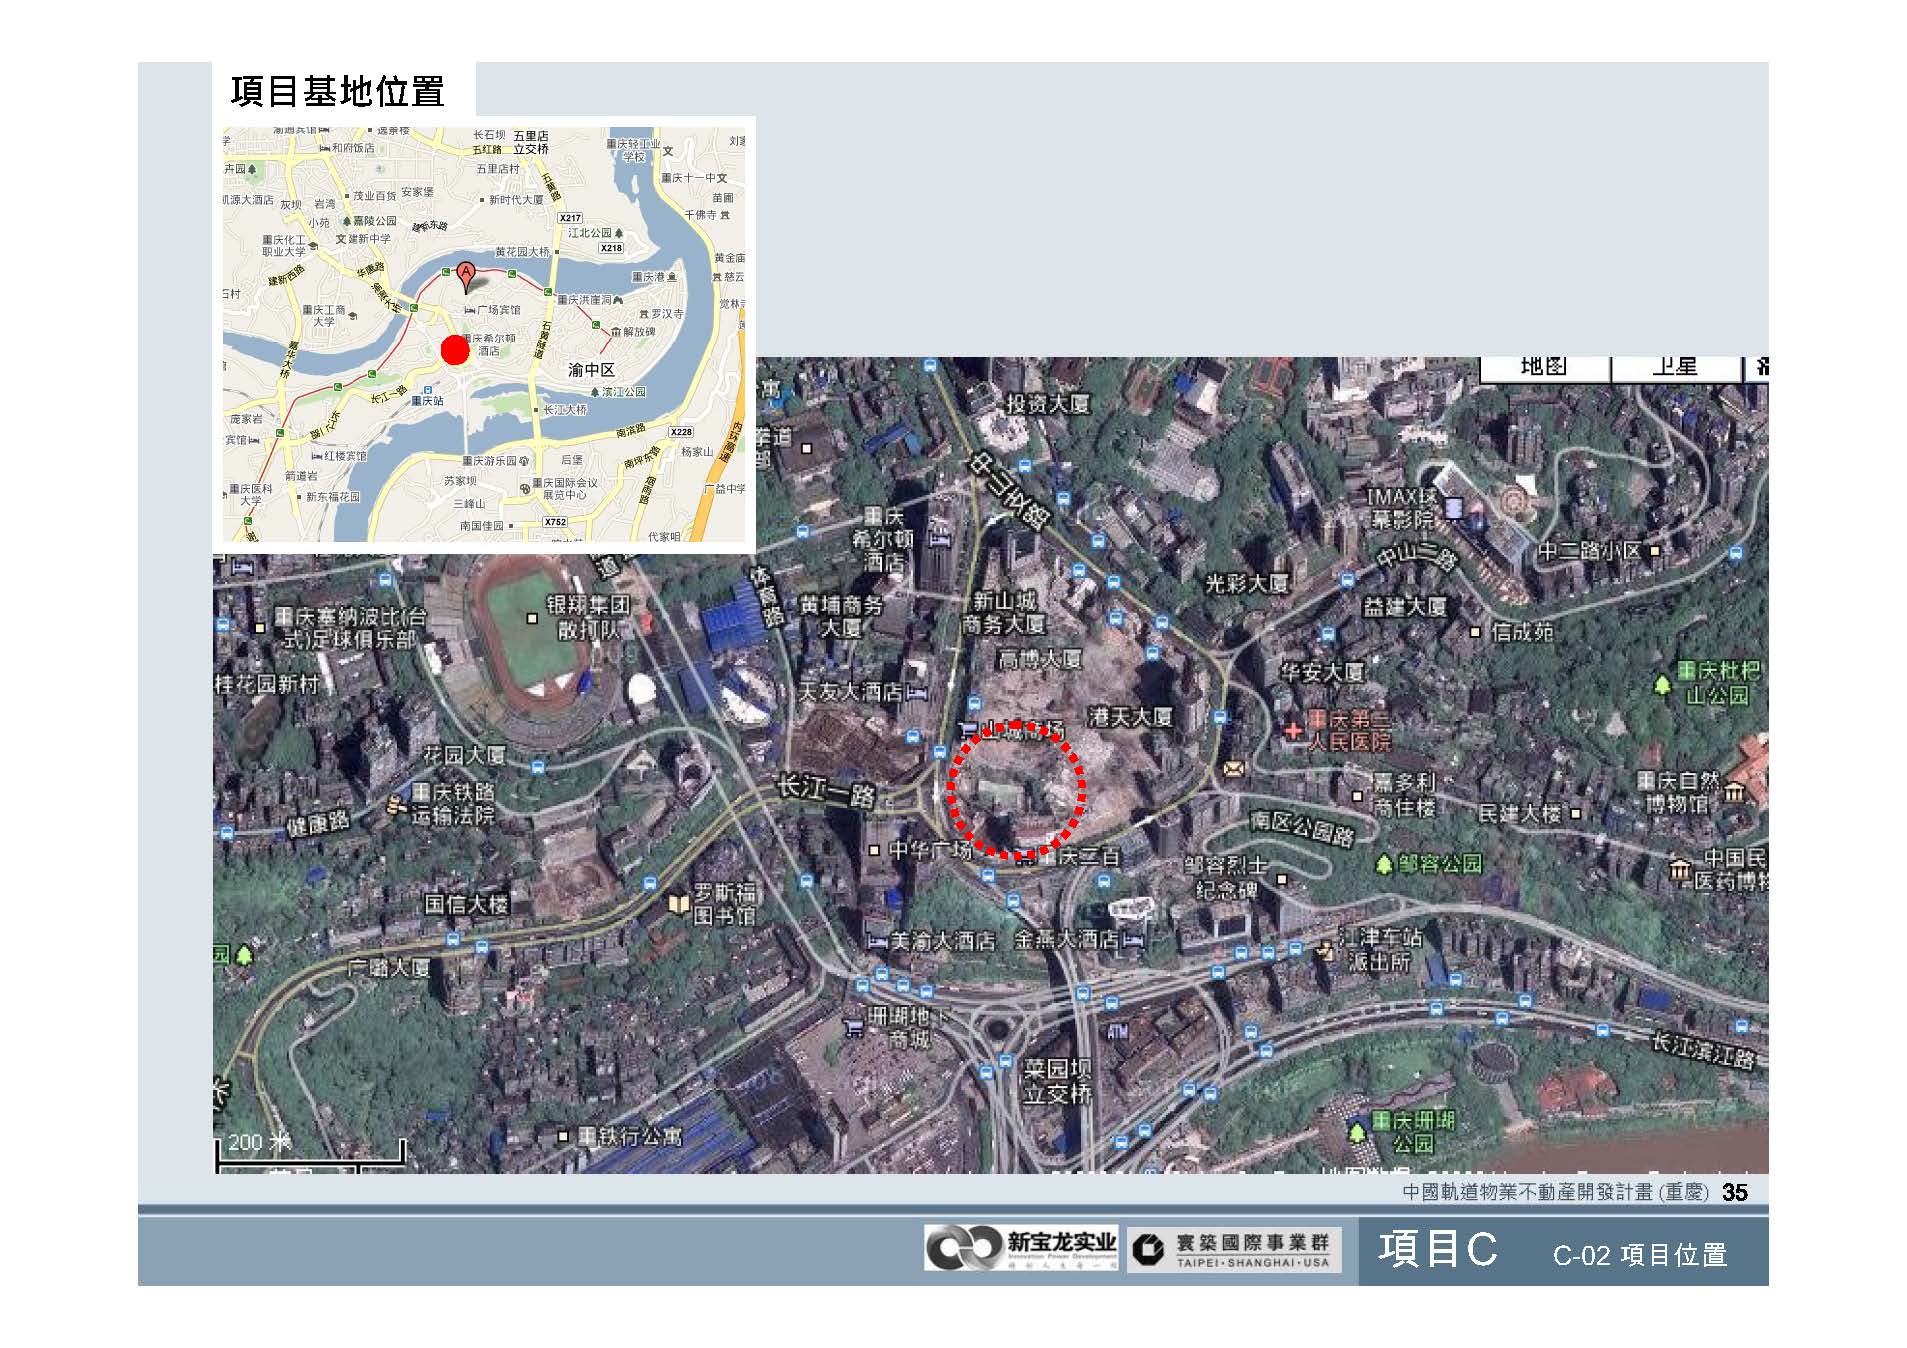 20100812-中國軌道物業不動產開發計畫(重慶)_頁面_36